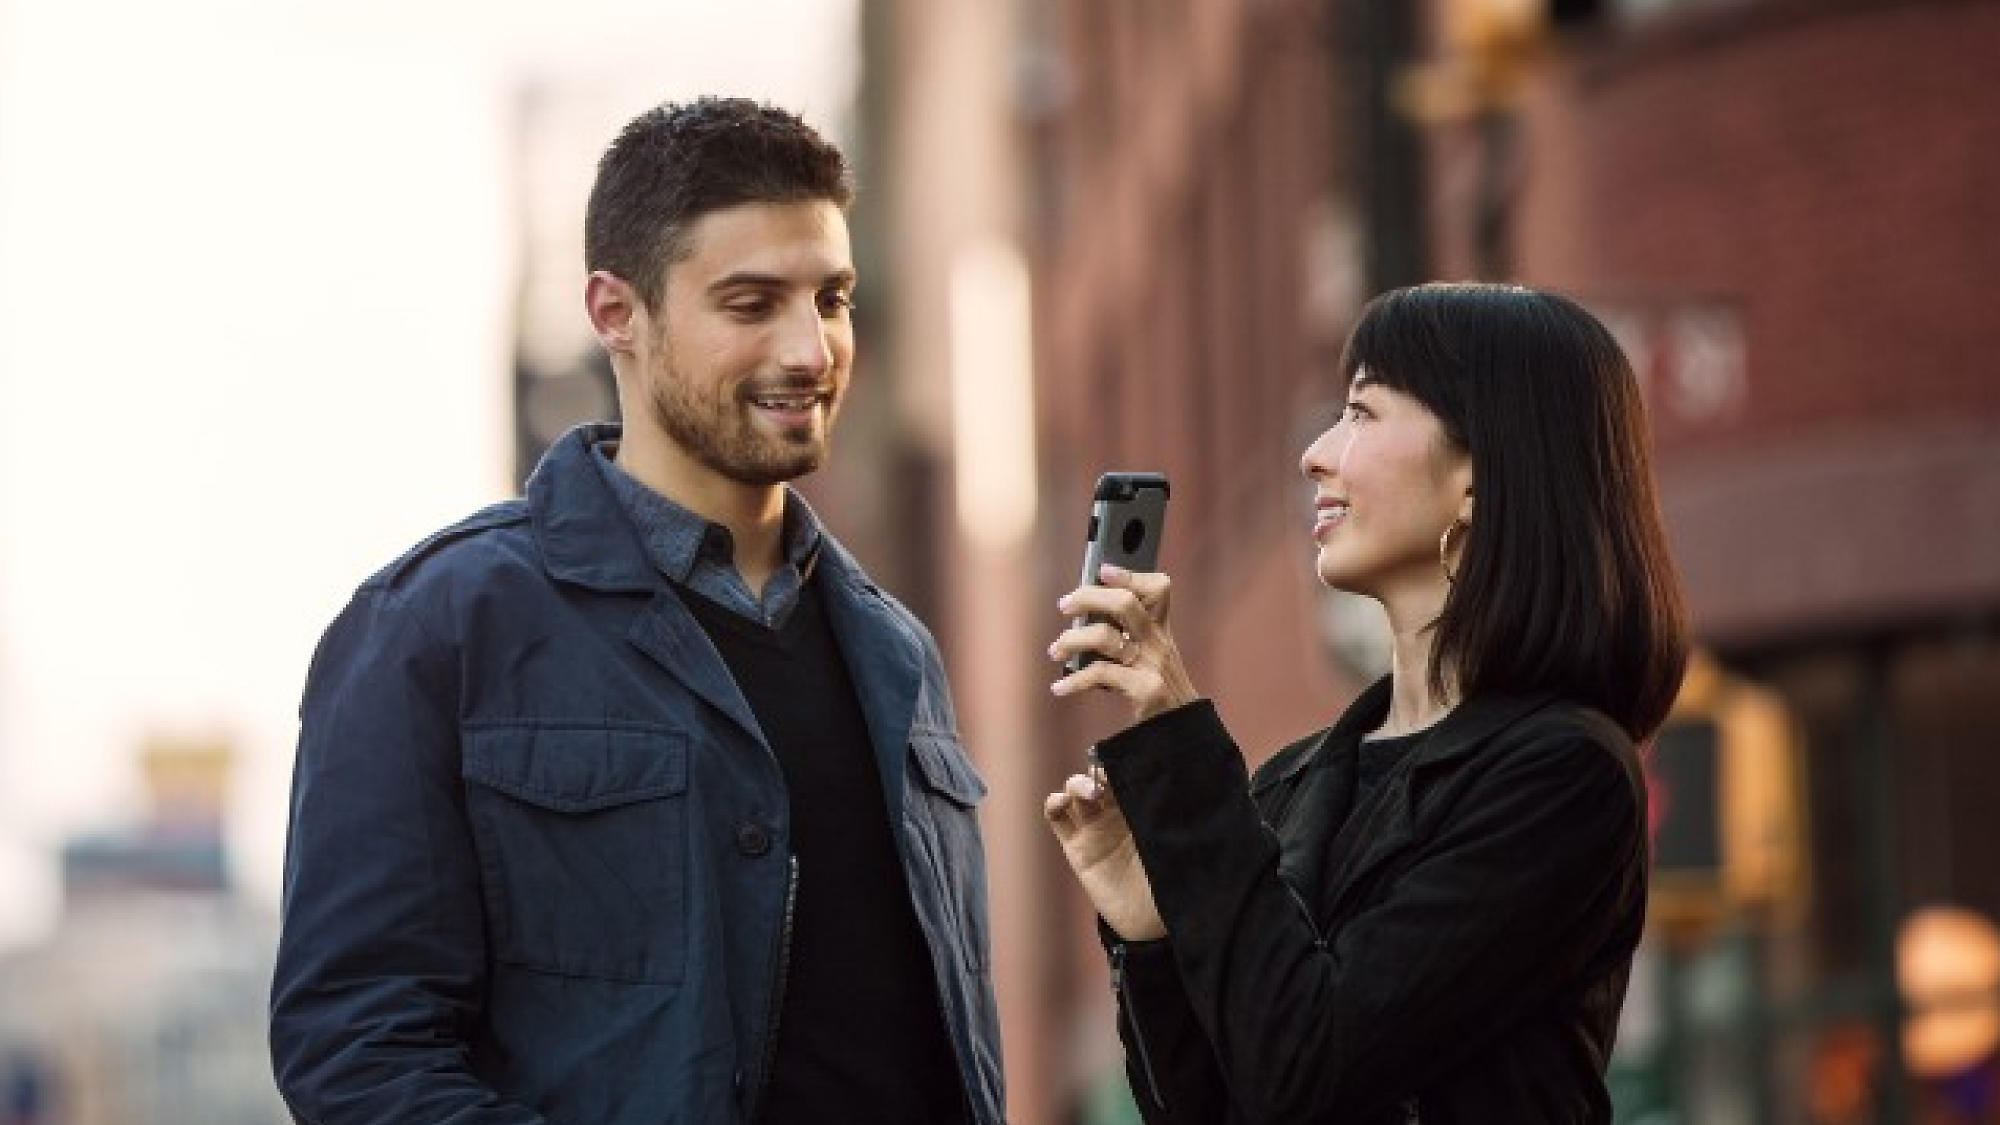 Una mujer sosteniendo un smartphone lo apunta hacia un hombre mientras ambos están en una calle de la ciudad, sonriendo y teniendo una conversación.